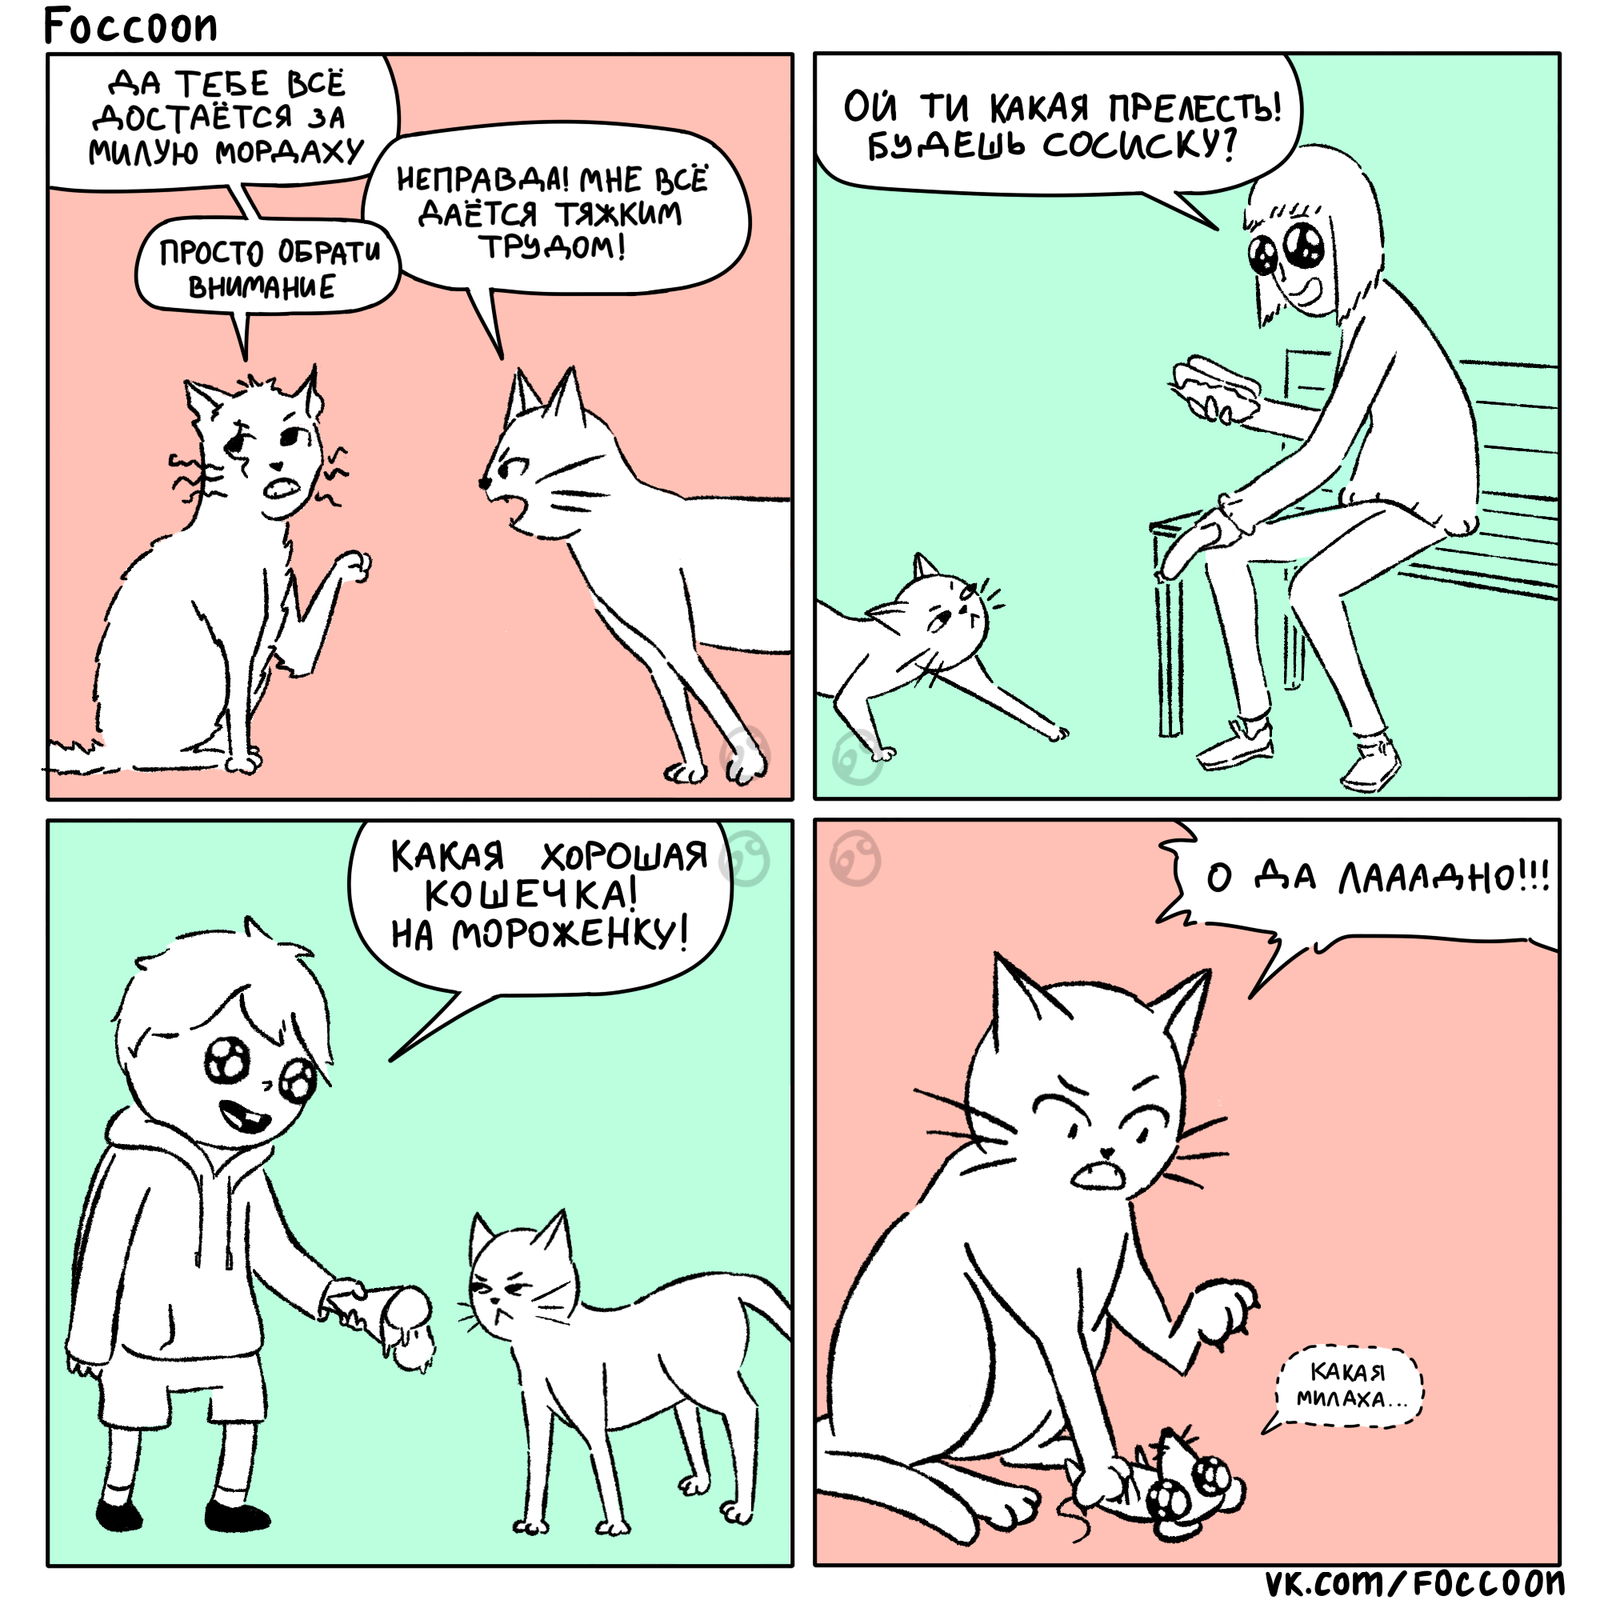 Mordakha - cat, Animals, Comics, Foccoon, My